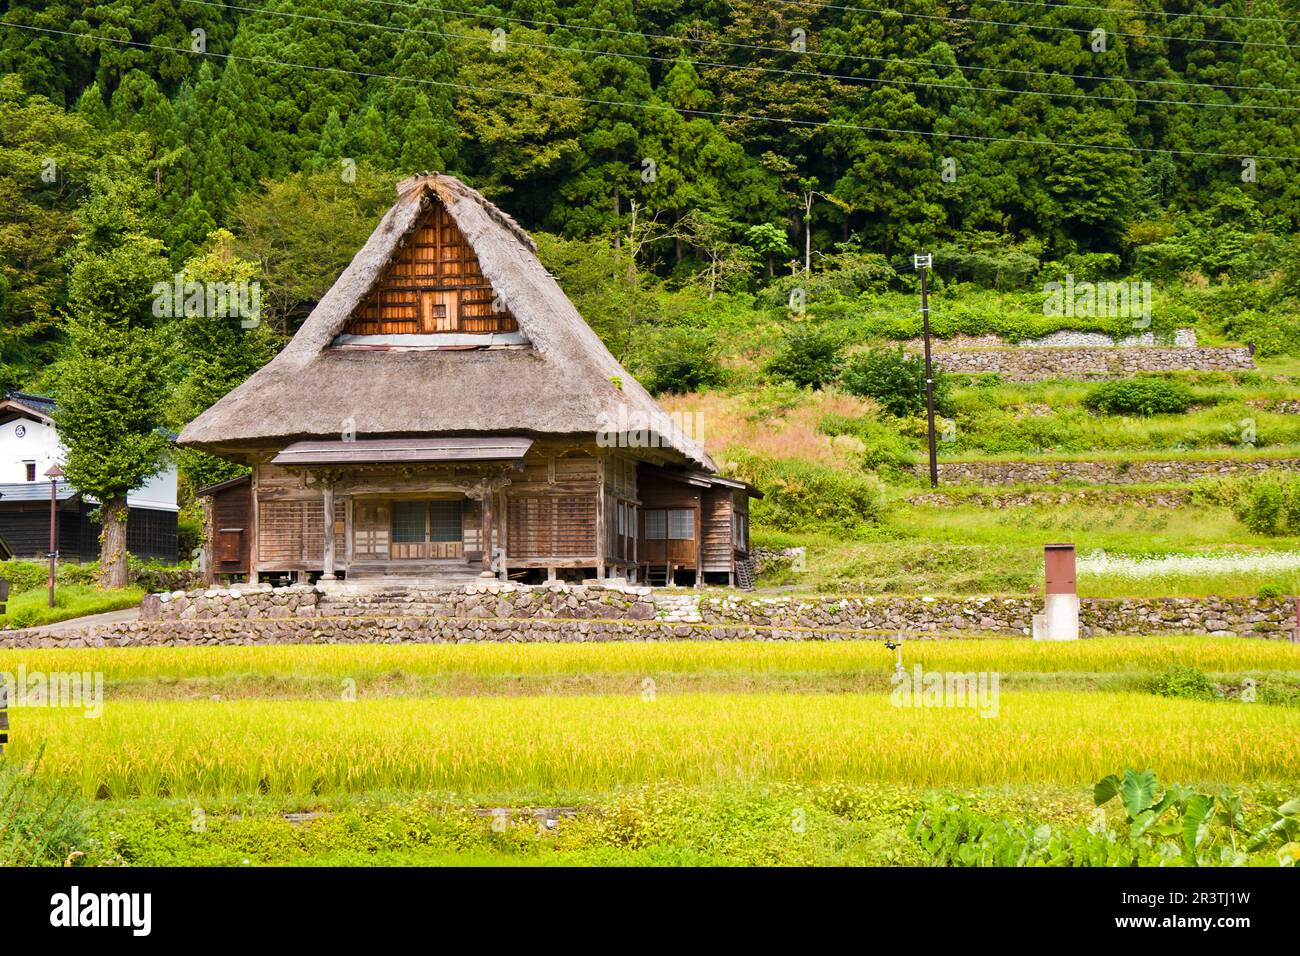 World Heritage site Ainokura (Gokayama) mountain village in Toyama prefecture. Stock Photo